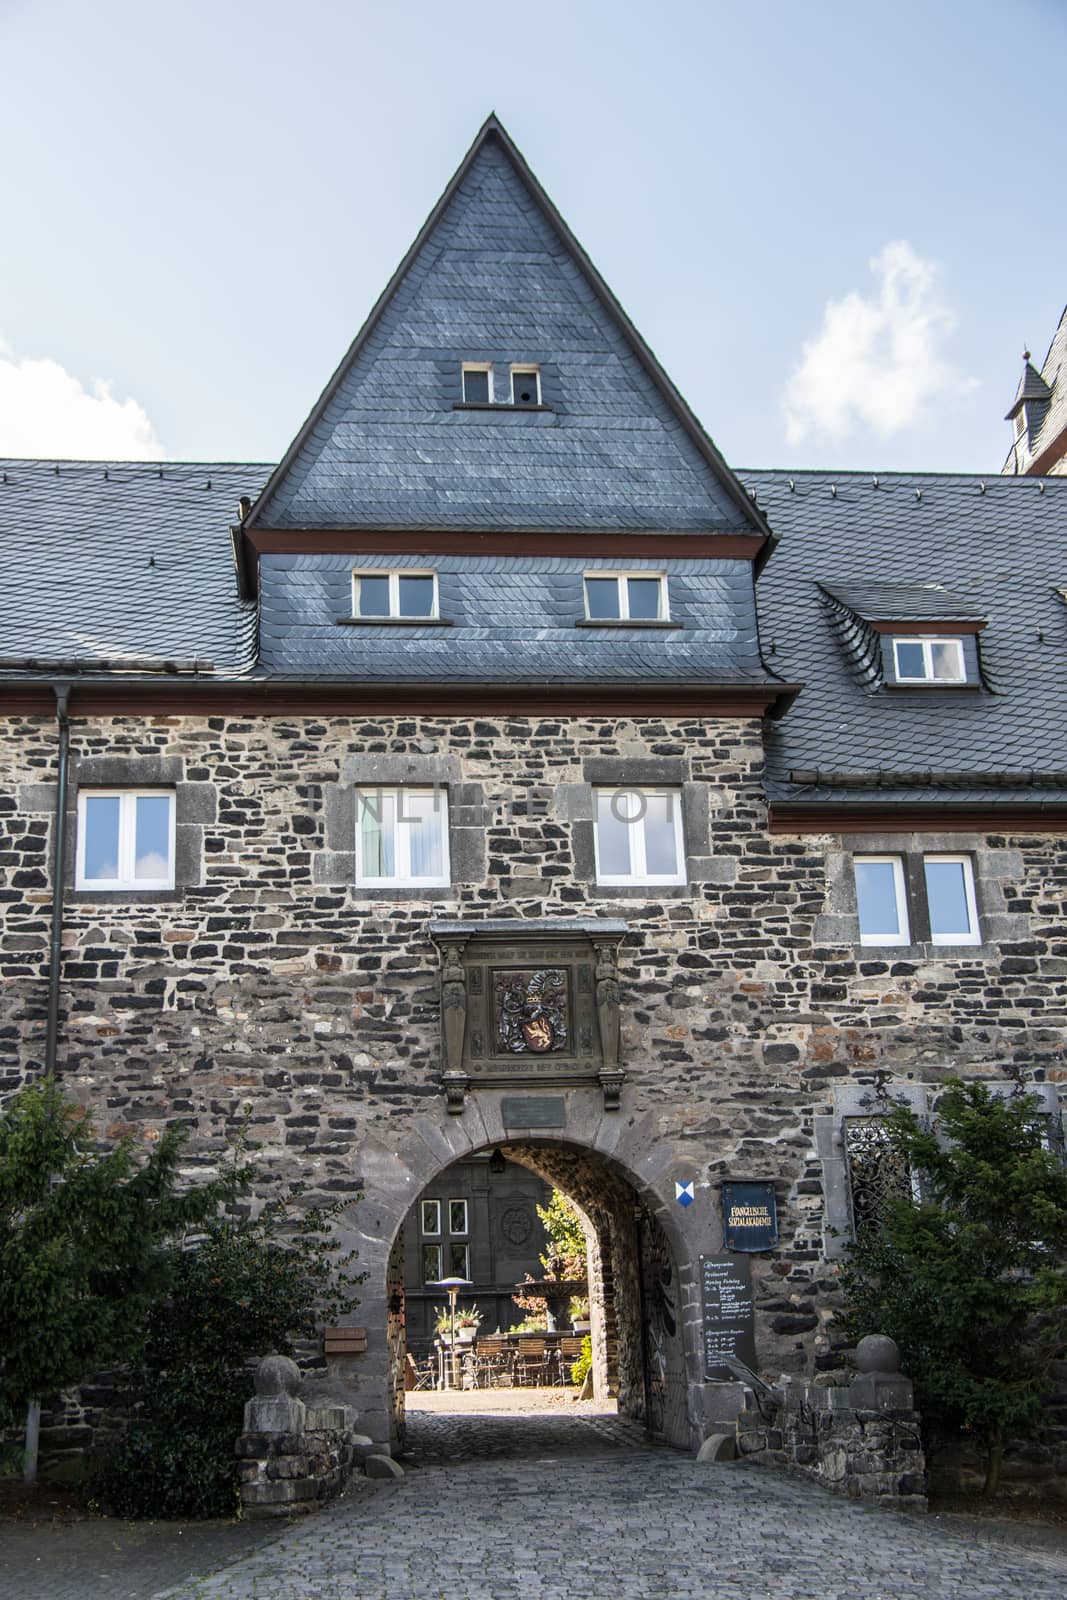 Friedewald castle hotel in the Westerwald